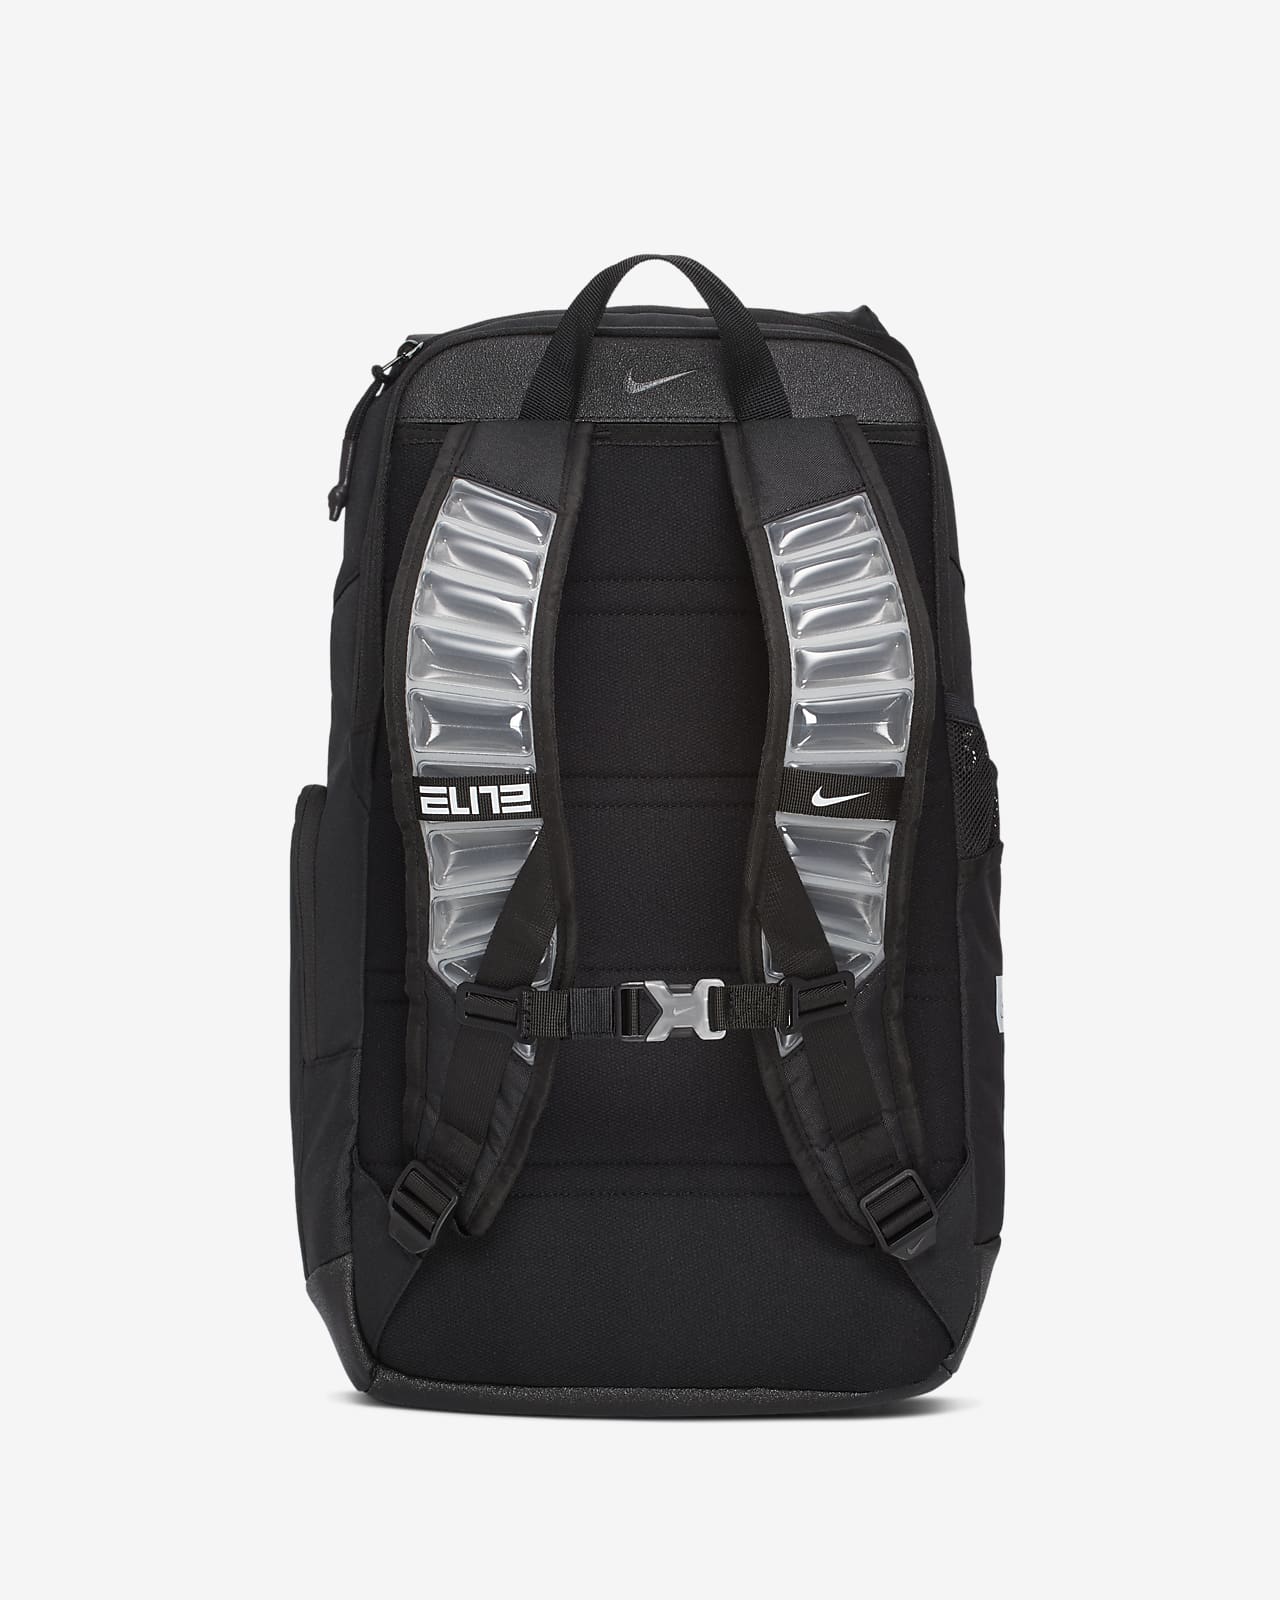 nike elite backpack 2020